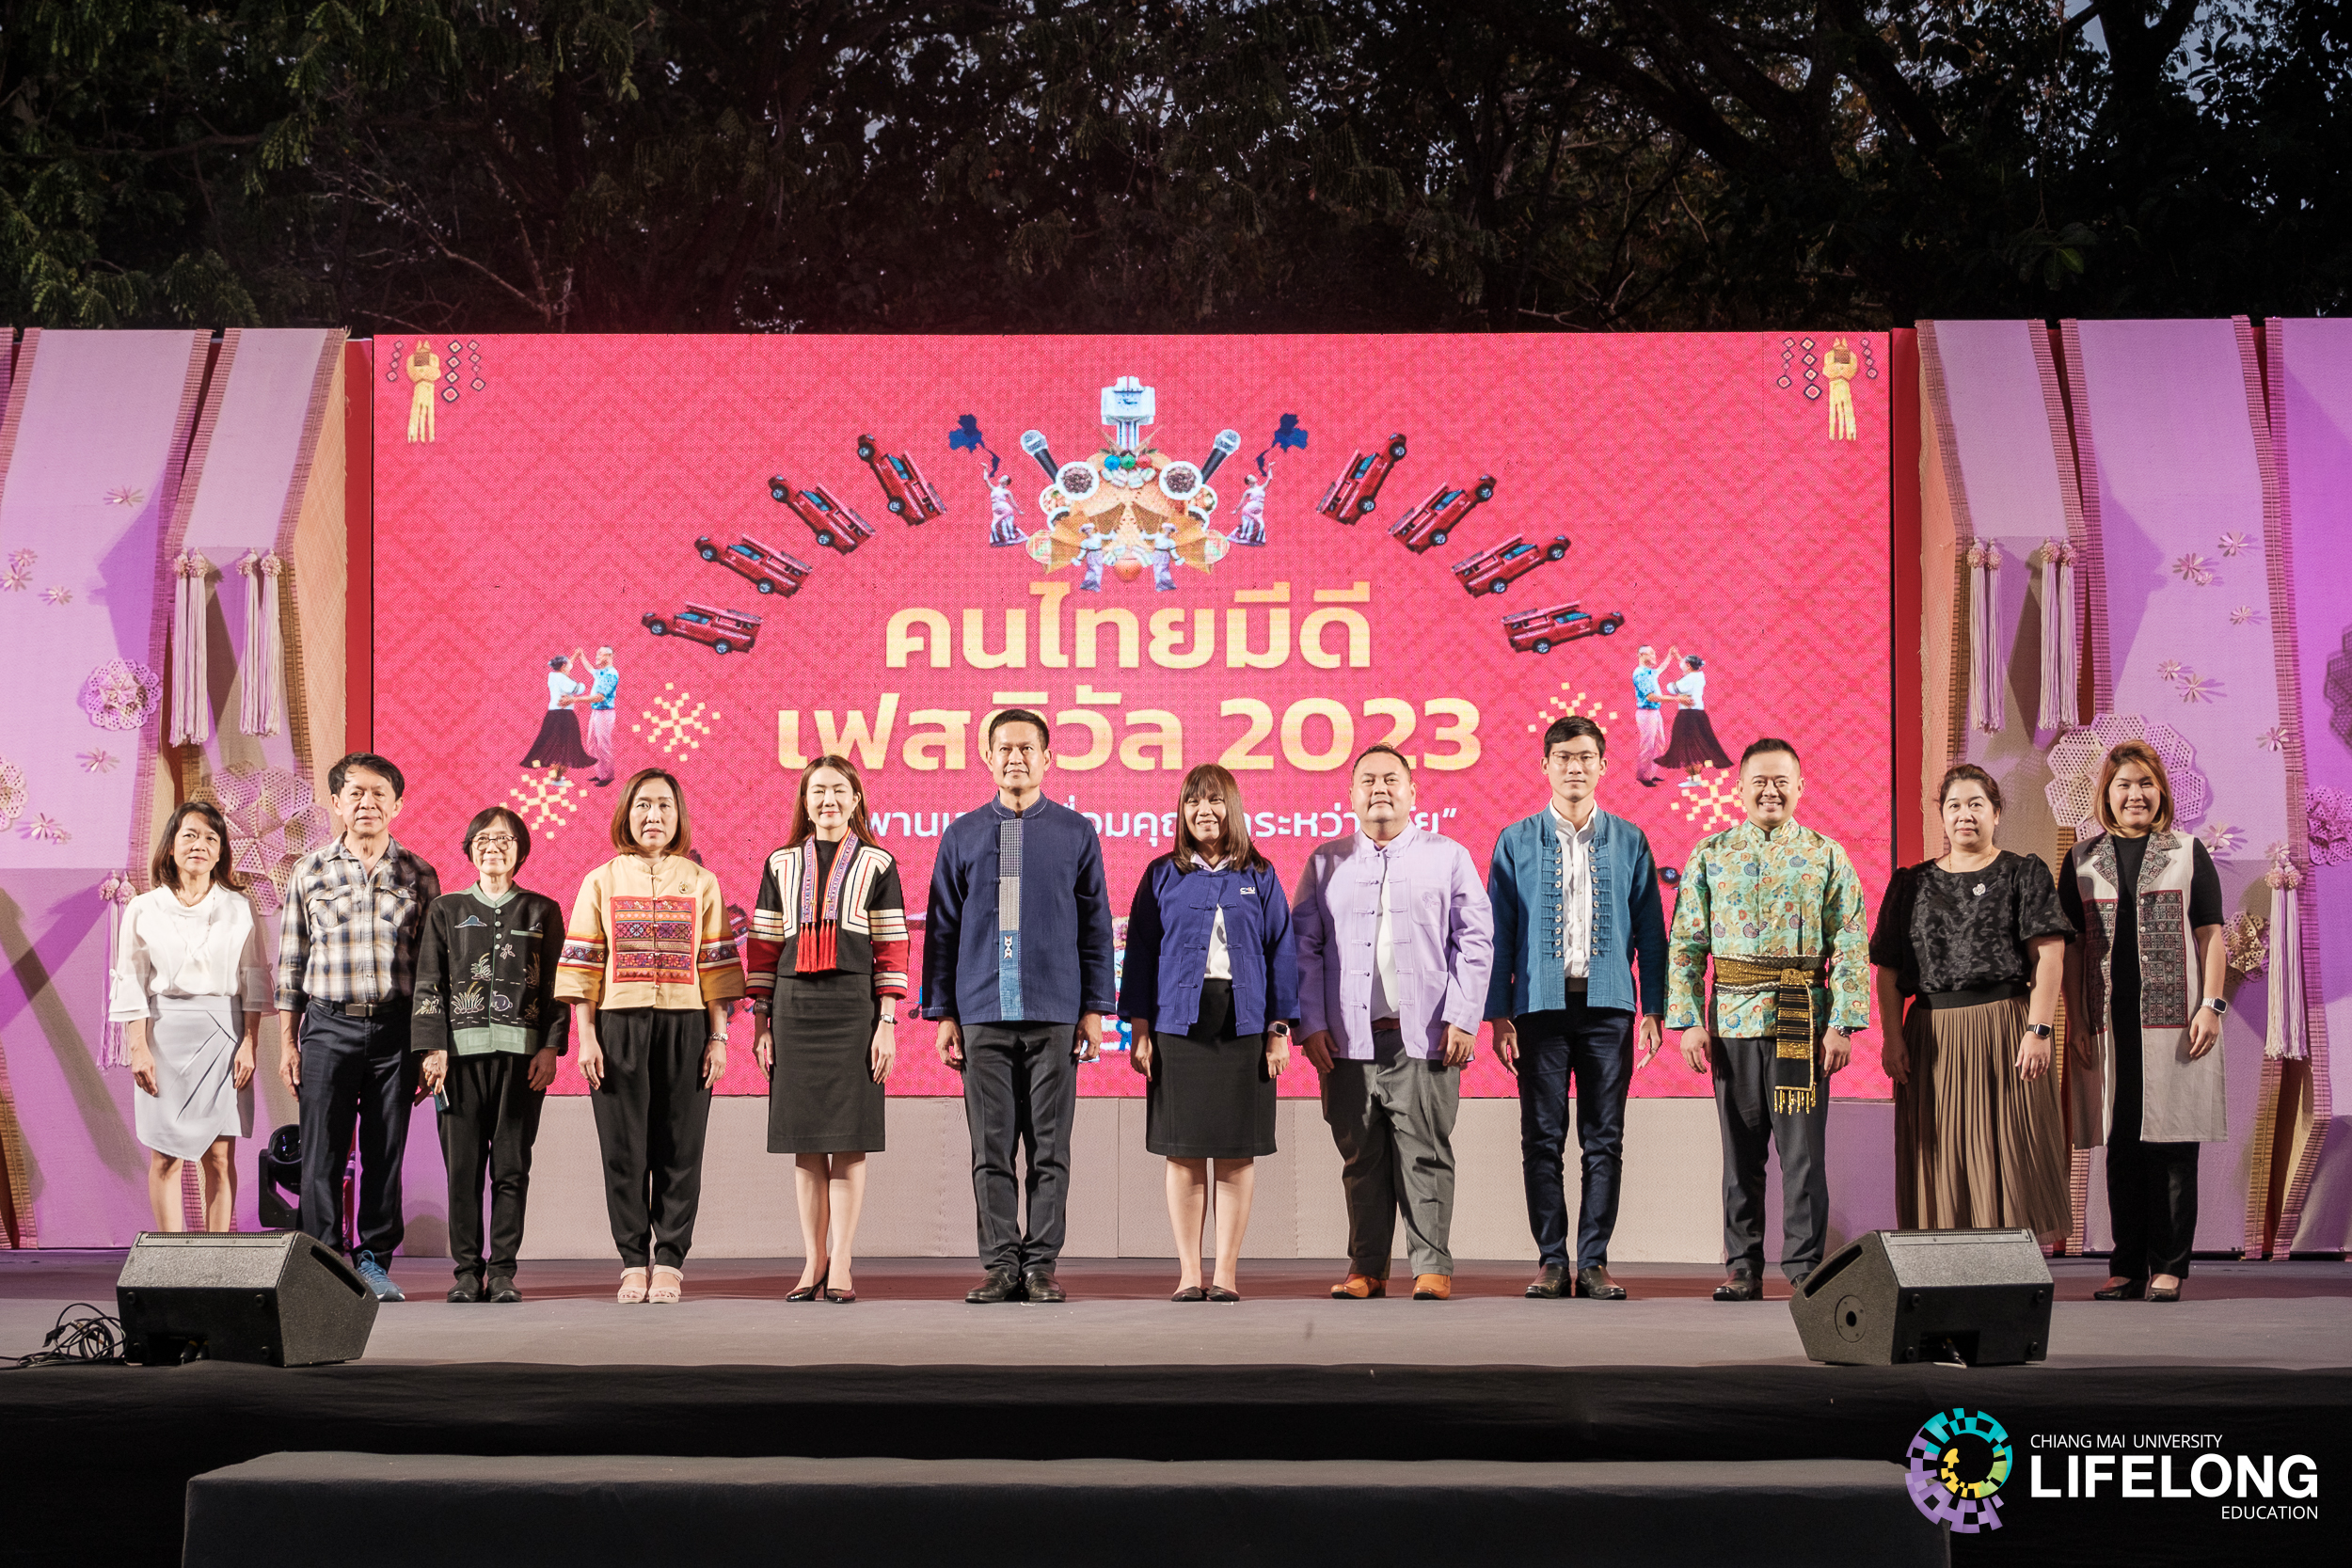 มีดี สานพลังภาคีฯ จัดกิจกรรม คนไทยมีดี เฟสติวัล 2023 ร่วมสนับสนุนผู้ประกอบการสูงวัย เชื่อมภูมิปัญญาท้องถิ่นสู่ตลาดคนรุ่นใหม่ ภายใต้ธีม “สะพานเวลา เชื่อมคุณค่าระหว่างวัย”